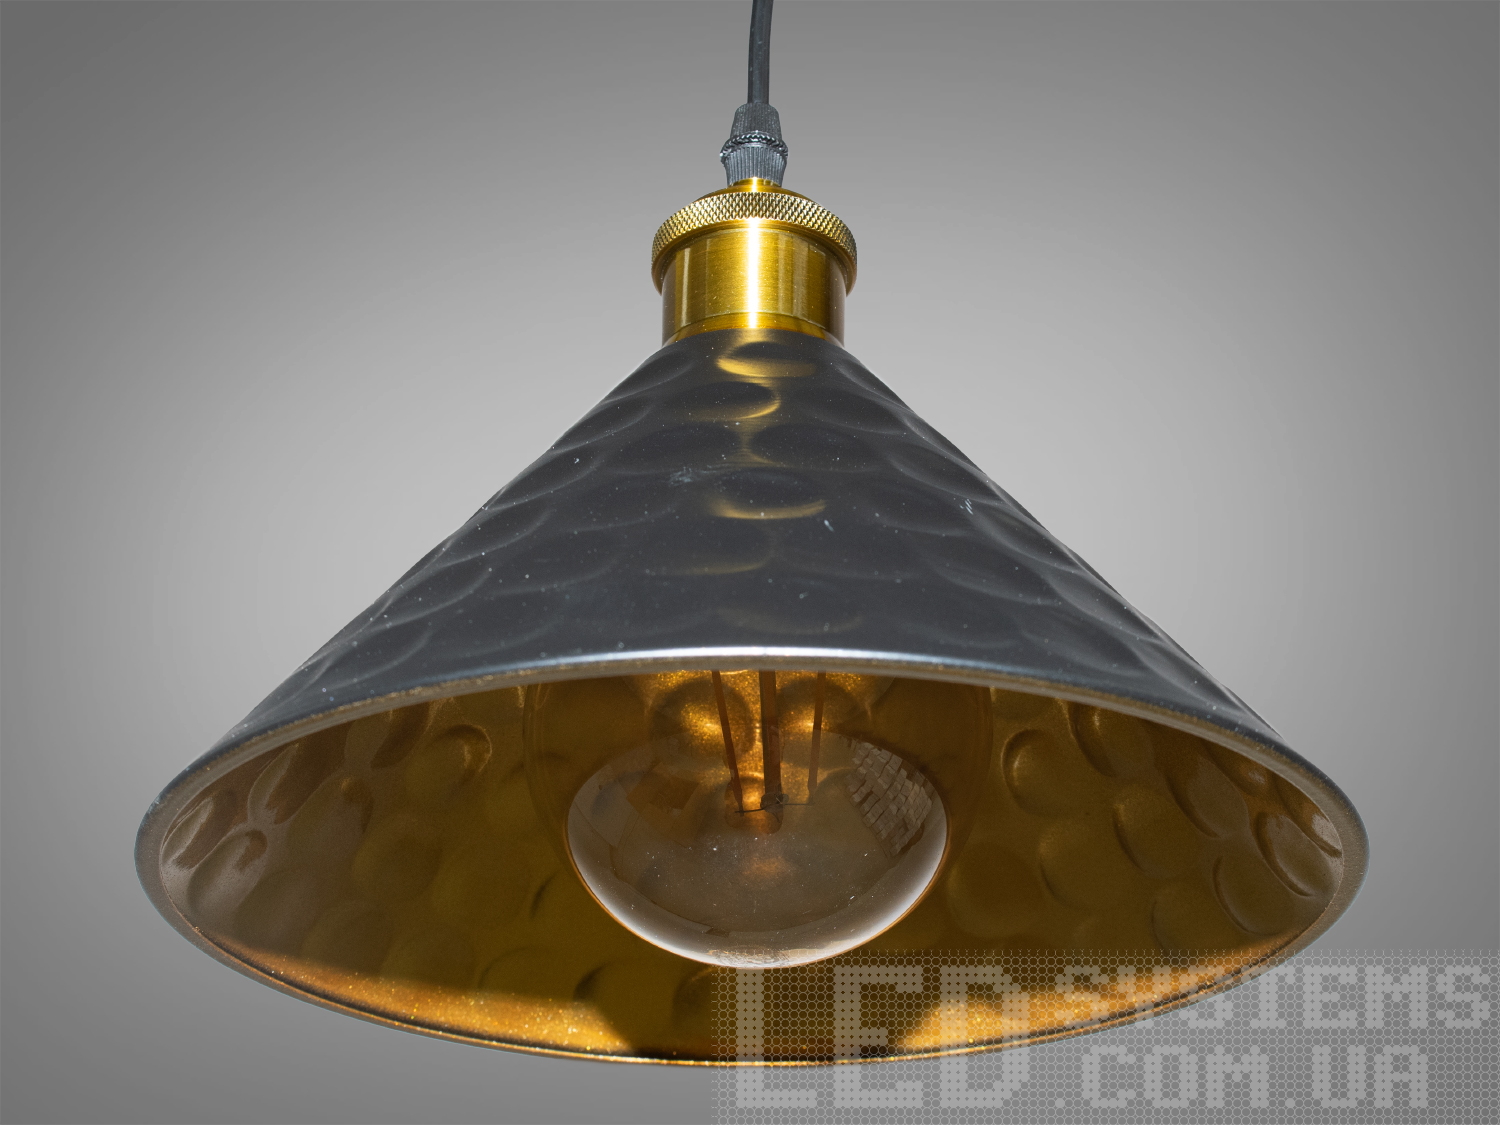 Світильник-підвіс в стилі лофт, який ідеально підходить під лампочку Едісона, об'єднує  у собі вишуканість  та  індустріальний шарм. Його дизайн підкреслює автентичність та теплоту лампочки Едісона, створюючи унікальний елемент декору та освітлення.Характеристики світильника:Лампа Едісона як центральний елемент: Спеціально розроблений дизайн, що виділяє та підкреслює лампу Едісона як центральний елемент світильника. Застосування лампи Едісона з декоративними нитками або нестандартною формою додає виробу вишуканості та тепла. Лампочка Едісона надає приємне приглушене світло, створюючи тепло та затишну атмосферу в місці розташування світильника.Матеріали з індустріальним виглядом: Використовуються металеві або чорні матеріали, що надають індустріальний шарм та вишуканість. Мінімалізм цього світильника підкреслить вашу індивідуальність і відчуття стилю. Металеві елементи можуть мати сліди старіння, підряпини чи інші недоліки, що є характерними для стилю лофт та надають світильнику виразний вигляд.Лофтовий дизайн: З підвісом у вигляді ланцюга чи троса, грубими металевими деталями та відкритим дизайном, що додає стиль лофту. Стиль «Лофт» зараз дуже популярний, його люблять як творчі особистості, так і вельми практичні люди, які віддають перевагу комфорту і простоті в інтер'єрі. Світильники в стилі «лофт» ідеально впишуться в сучасні будинки, квартири, кафе, арт-простори, коворкінги, квеструми.Підвісний світильник ідеально поєднується з іншими індустріальними деталями, такими як відкриті труби, цегла або металеві стільниці.Можливість регулювання висоти: Дозволяє легко адаптувати світильник до різних просторових умов.Сфери використання:Ресторани та кафе: Створює тепло та затишне освітлення, ідеально підходить для створення атмосфери в зонах обіду або бару.Житлові приміщення: Виглядає чудово у вітальнях, кухнях чи спальнях, додаючи індустріальний акцент до інтер'єру.Магазини та виставкові зони: Створює стильний вигляд для приміщень, де важливий дизайн та видиму привабливість. Вигідно підкреслює стильні товари або предмети мистецтва, надаючи їм індивідуальний вигляд.Фото- та відеостудії: Забезпечує освітлення з характером для створення унікальних фото чи відеоматеріалів.Цей світильник-підвіс у стилі лофт з лампочкою Едісона створює особливу атмосферу, де тепло та стиль індустріального дизайну взаємодіють, надаючи приміщенню унікальний і вишуканий вигляд.Лампа в комплект не входить.